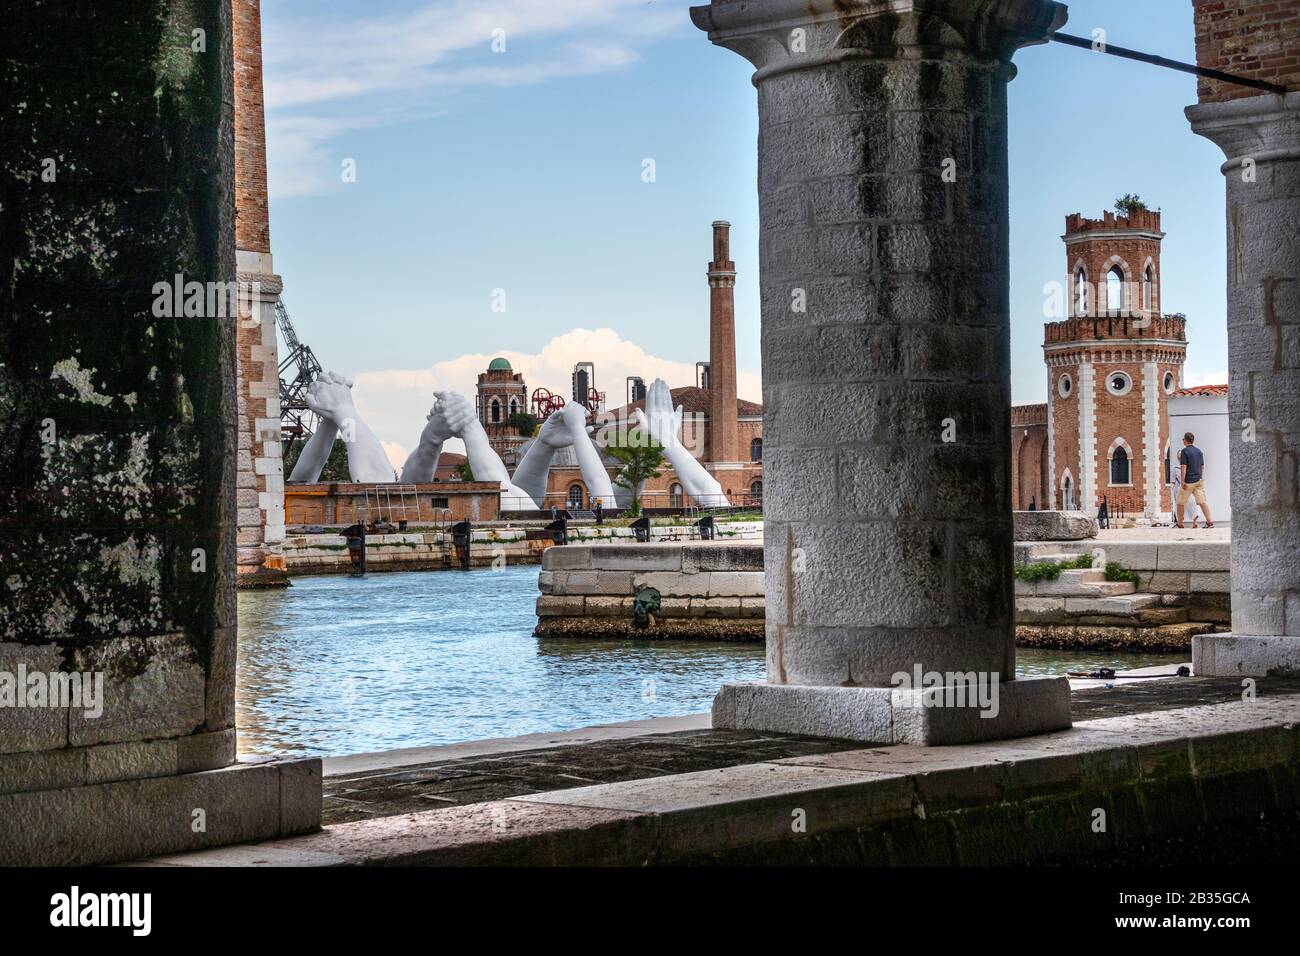 L'artiste italien Lorenzo Quinn construit des ponts sur Venise Arsenale, Italie. Six paires de mains de passage créant un pont sur une voie navigable vénitienne, symbole de la nécessité de construire des ponts et de surmonter les divisions. Banque D'Images